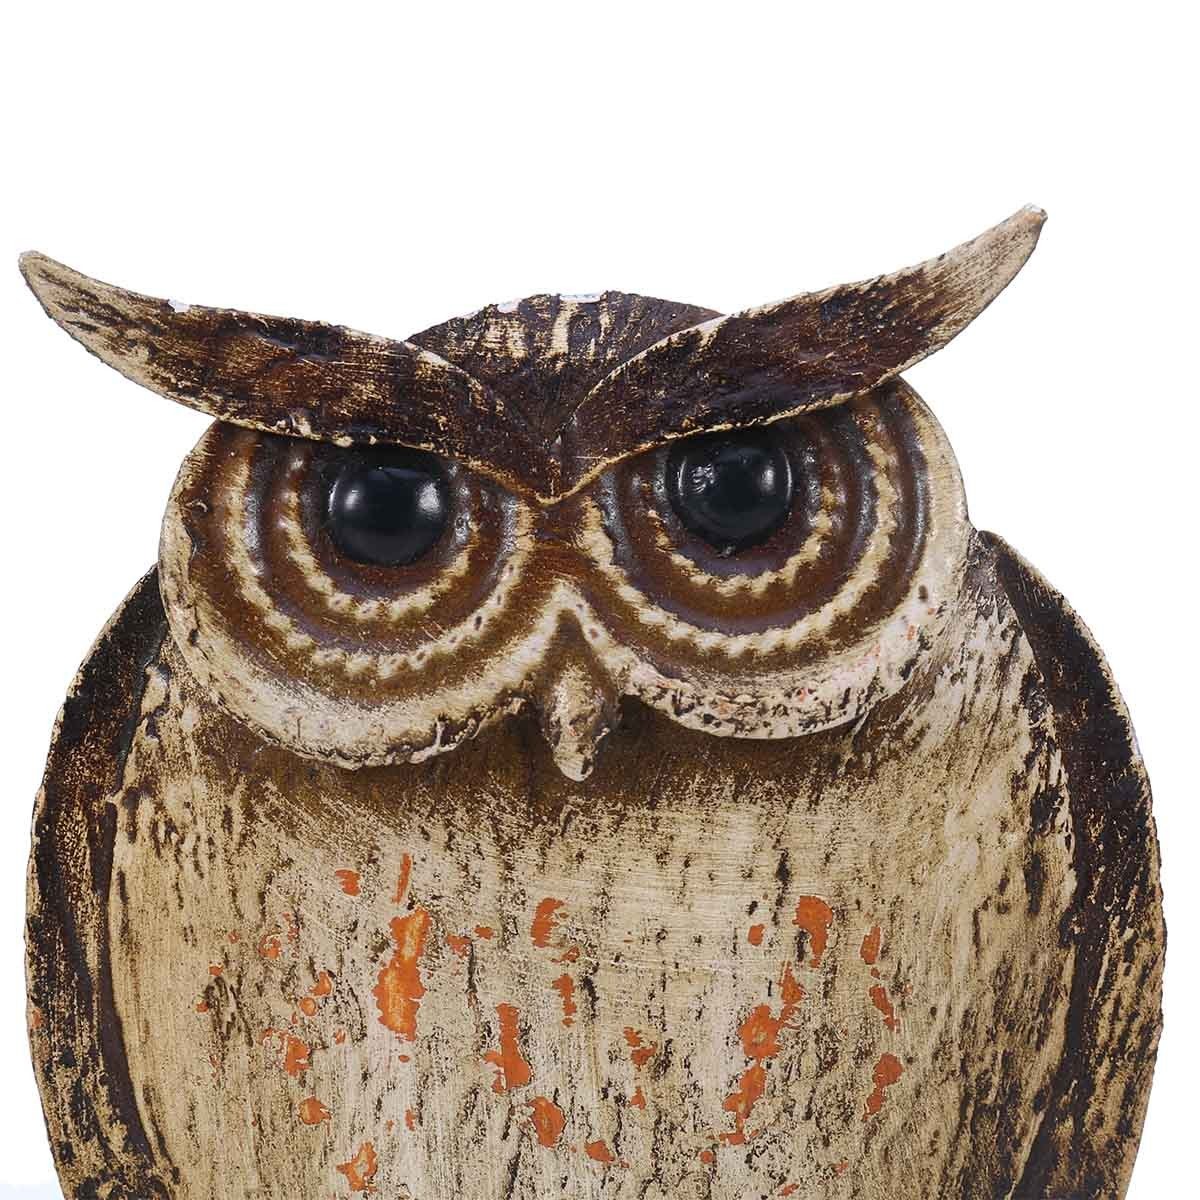 Owl Decor and Owl Nursery Decor